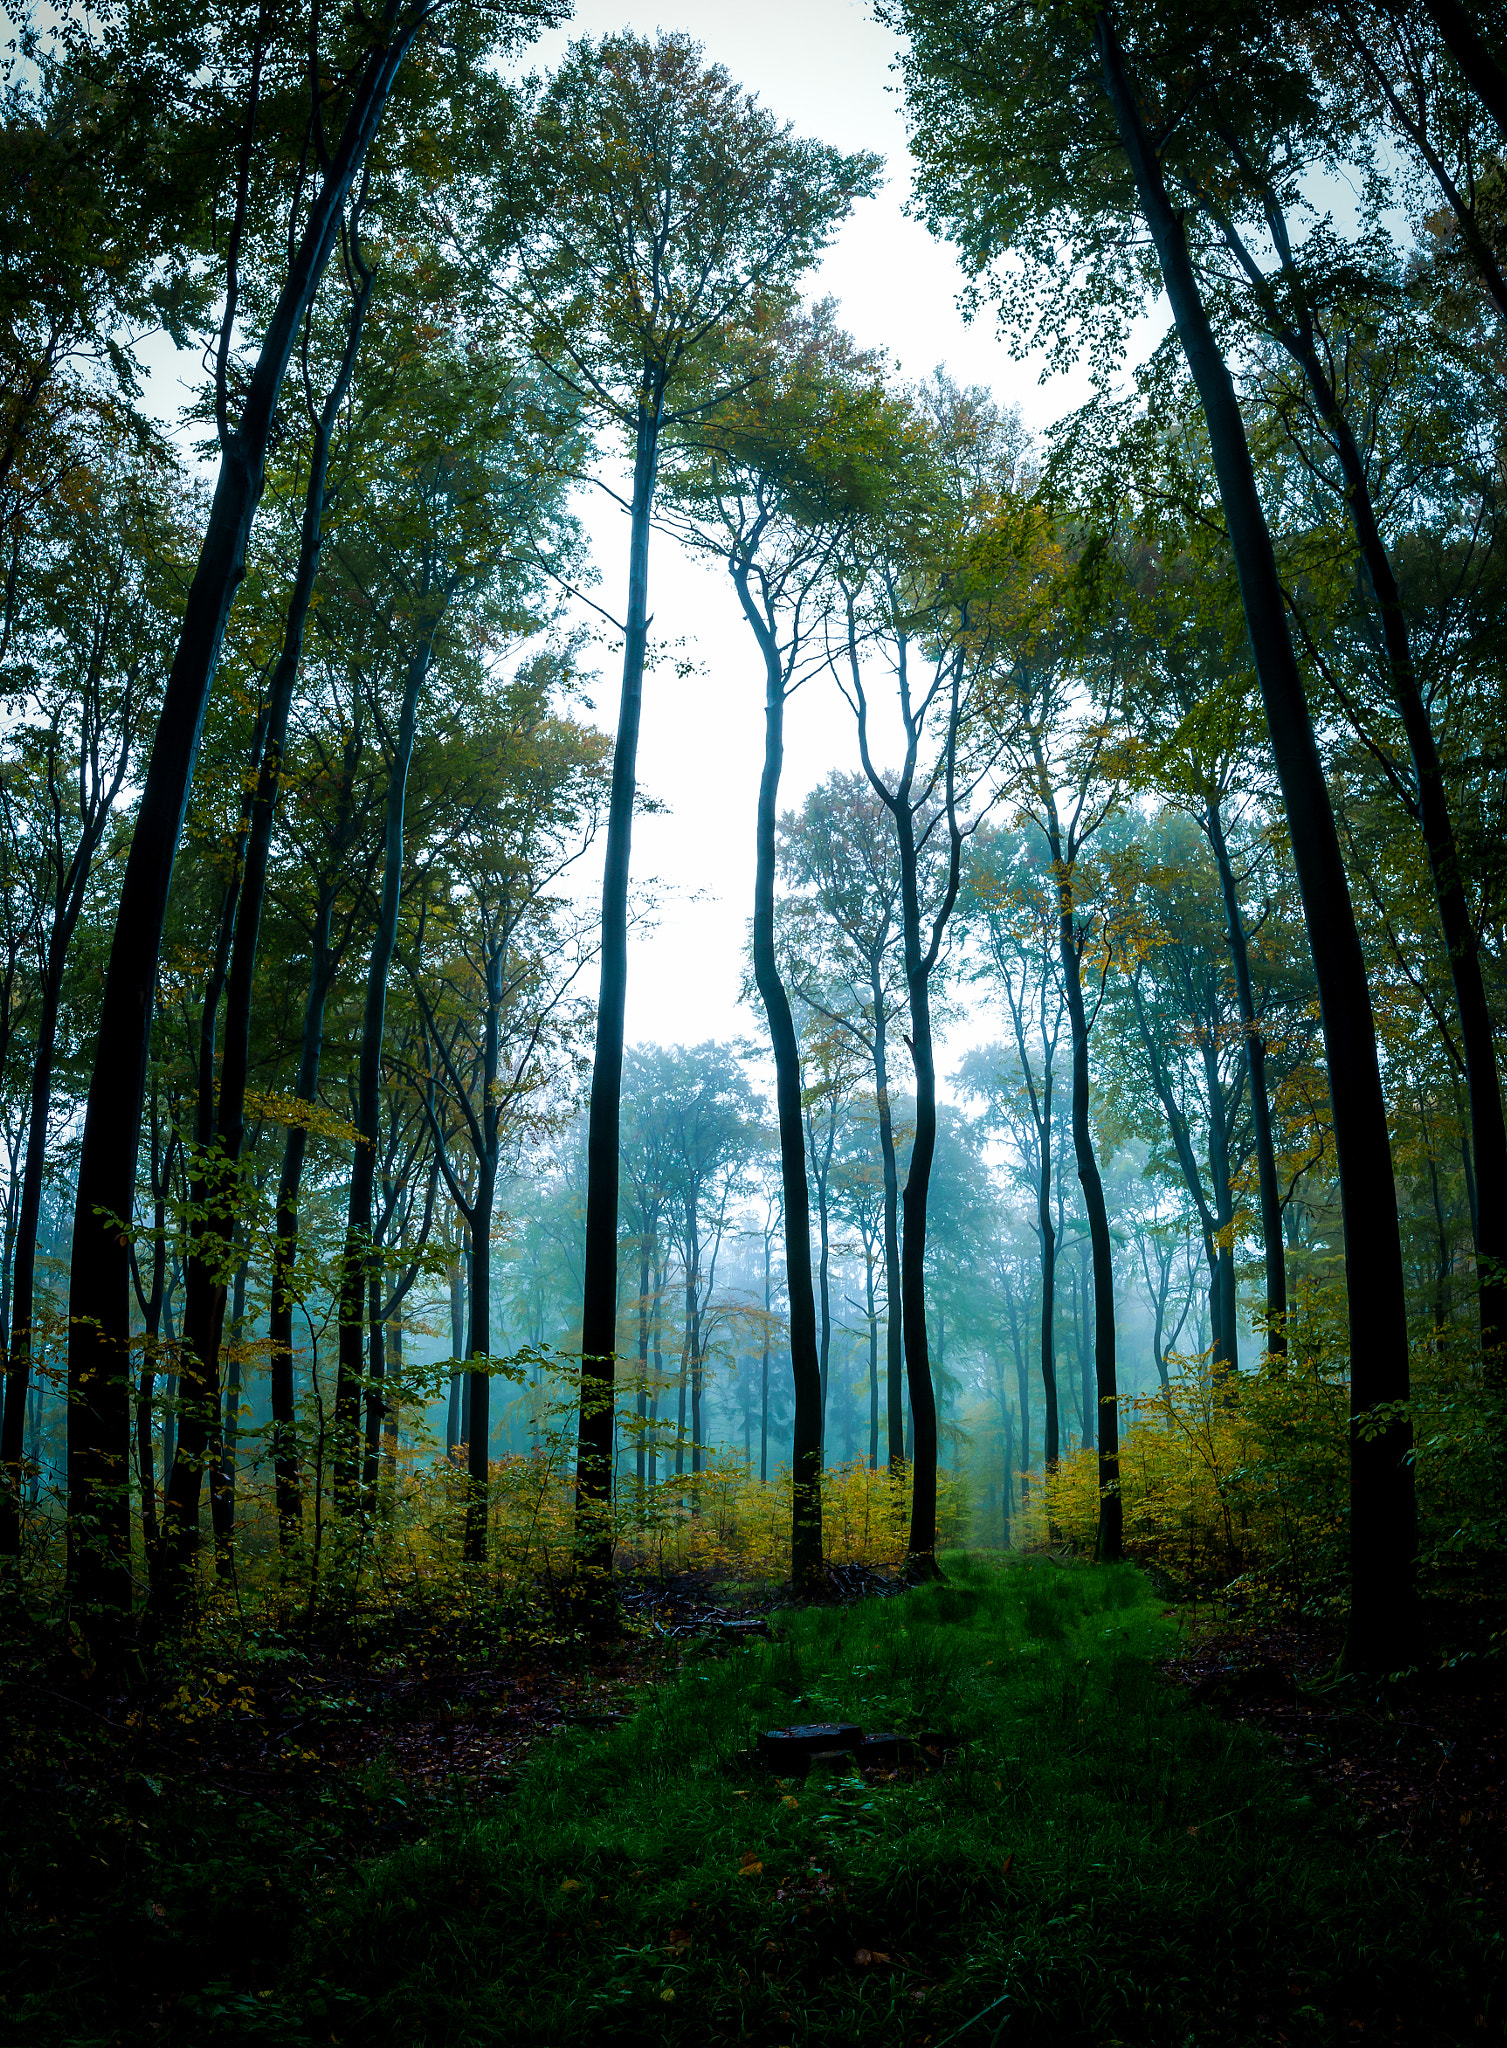 Nikon D600 + Nikon AF-S Nikkor 20mm F1.8G ED sample photo. Foggy forest photography